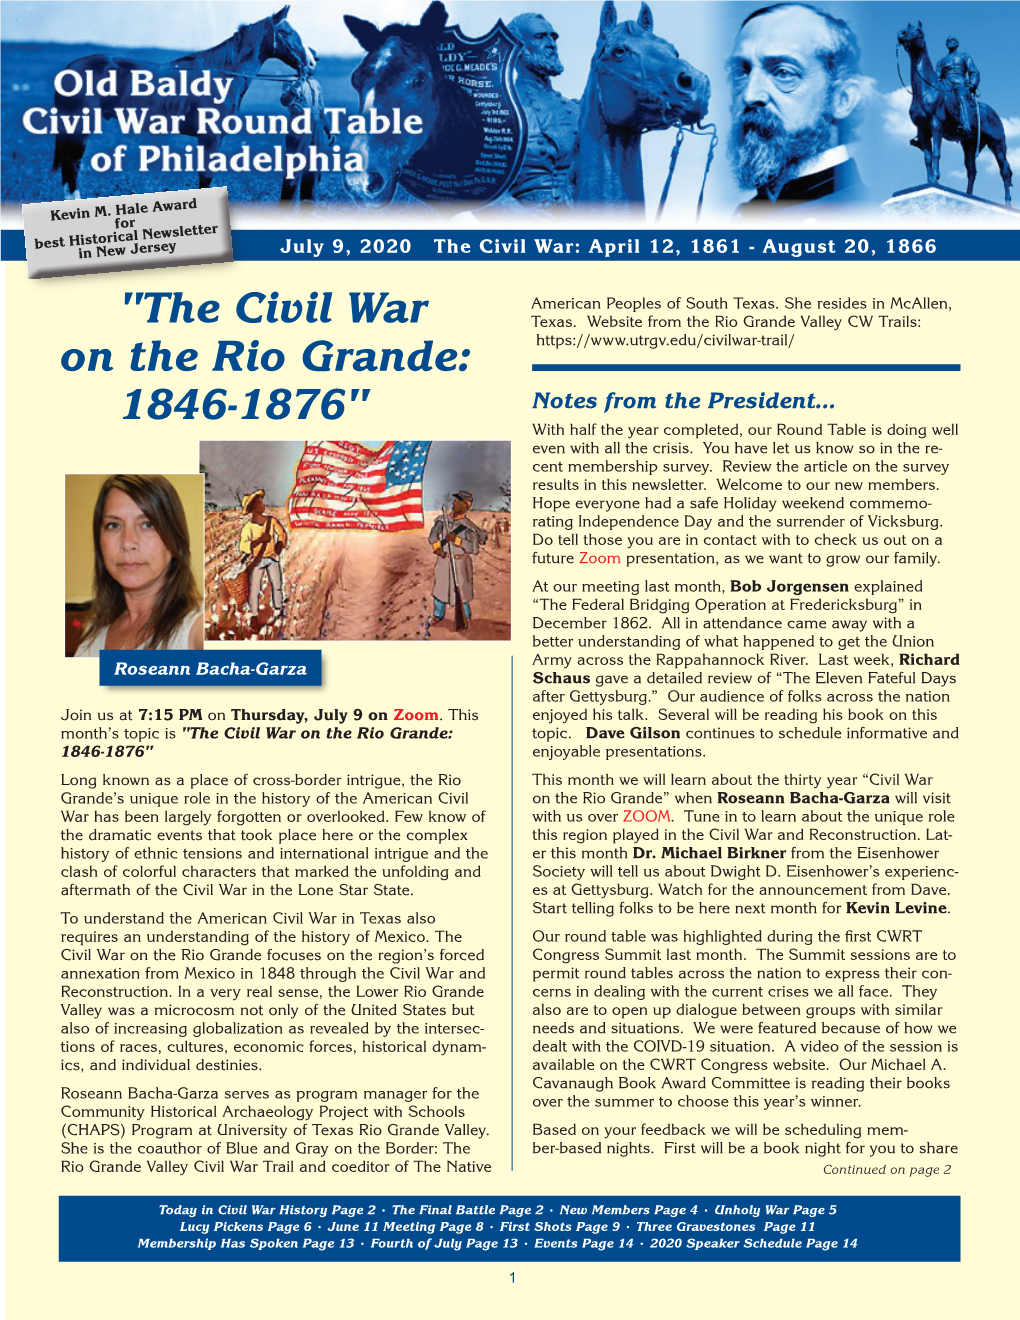 "The Civil War on the Rio Grande: 1846-1876"